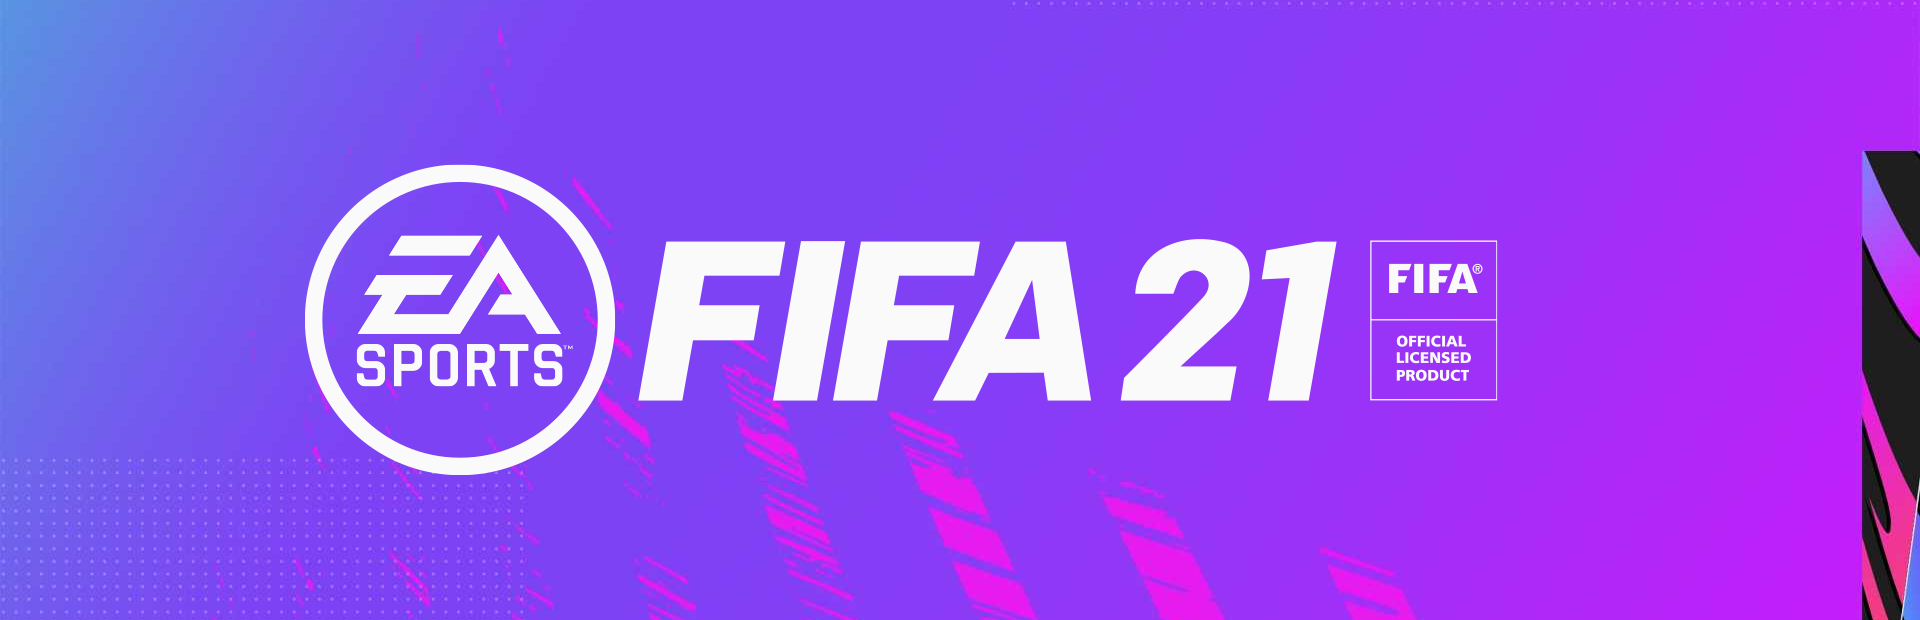 دانلود بازی FIFA 21 برای PC | گیمباتو